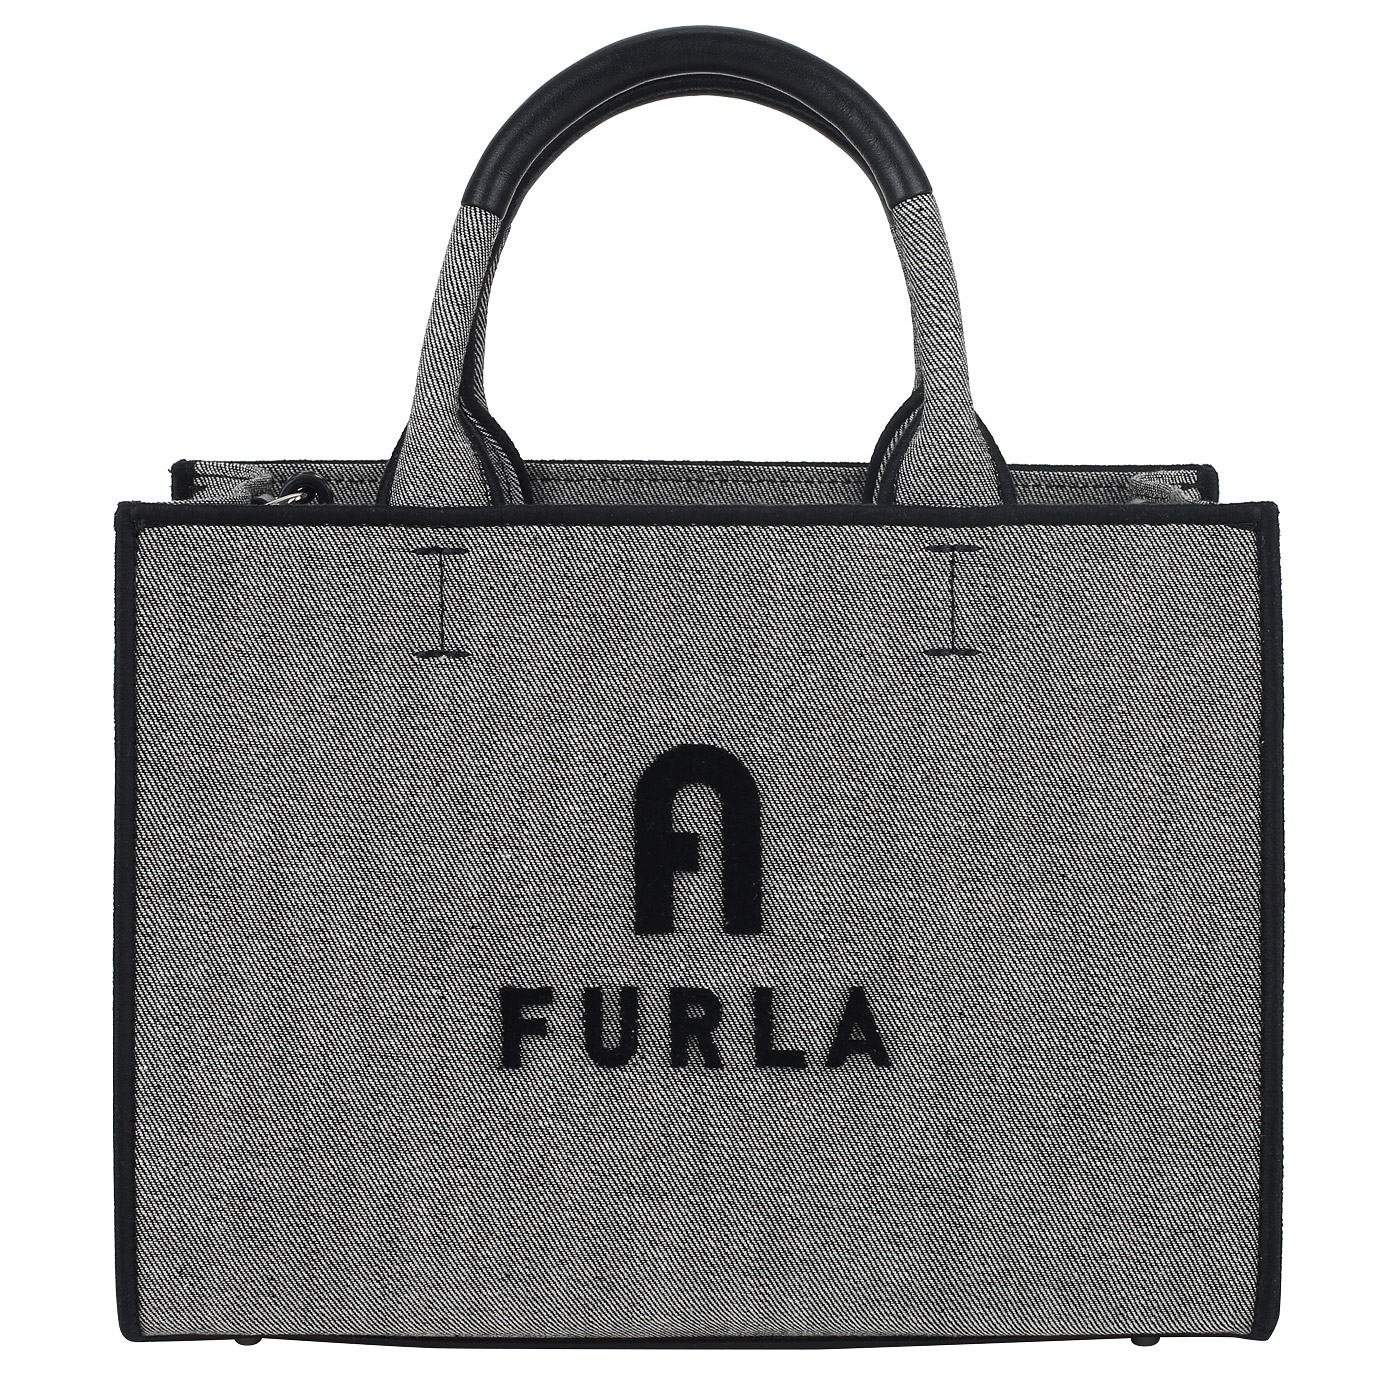 Текстильная сумка Furla Opportunity